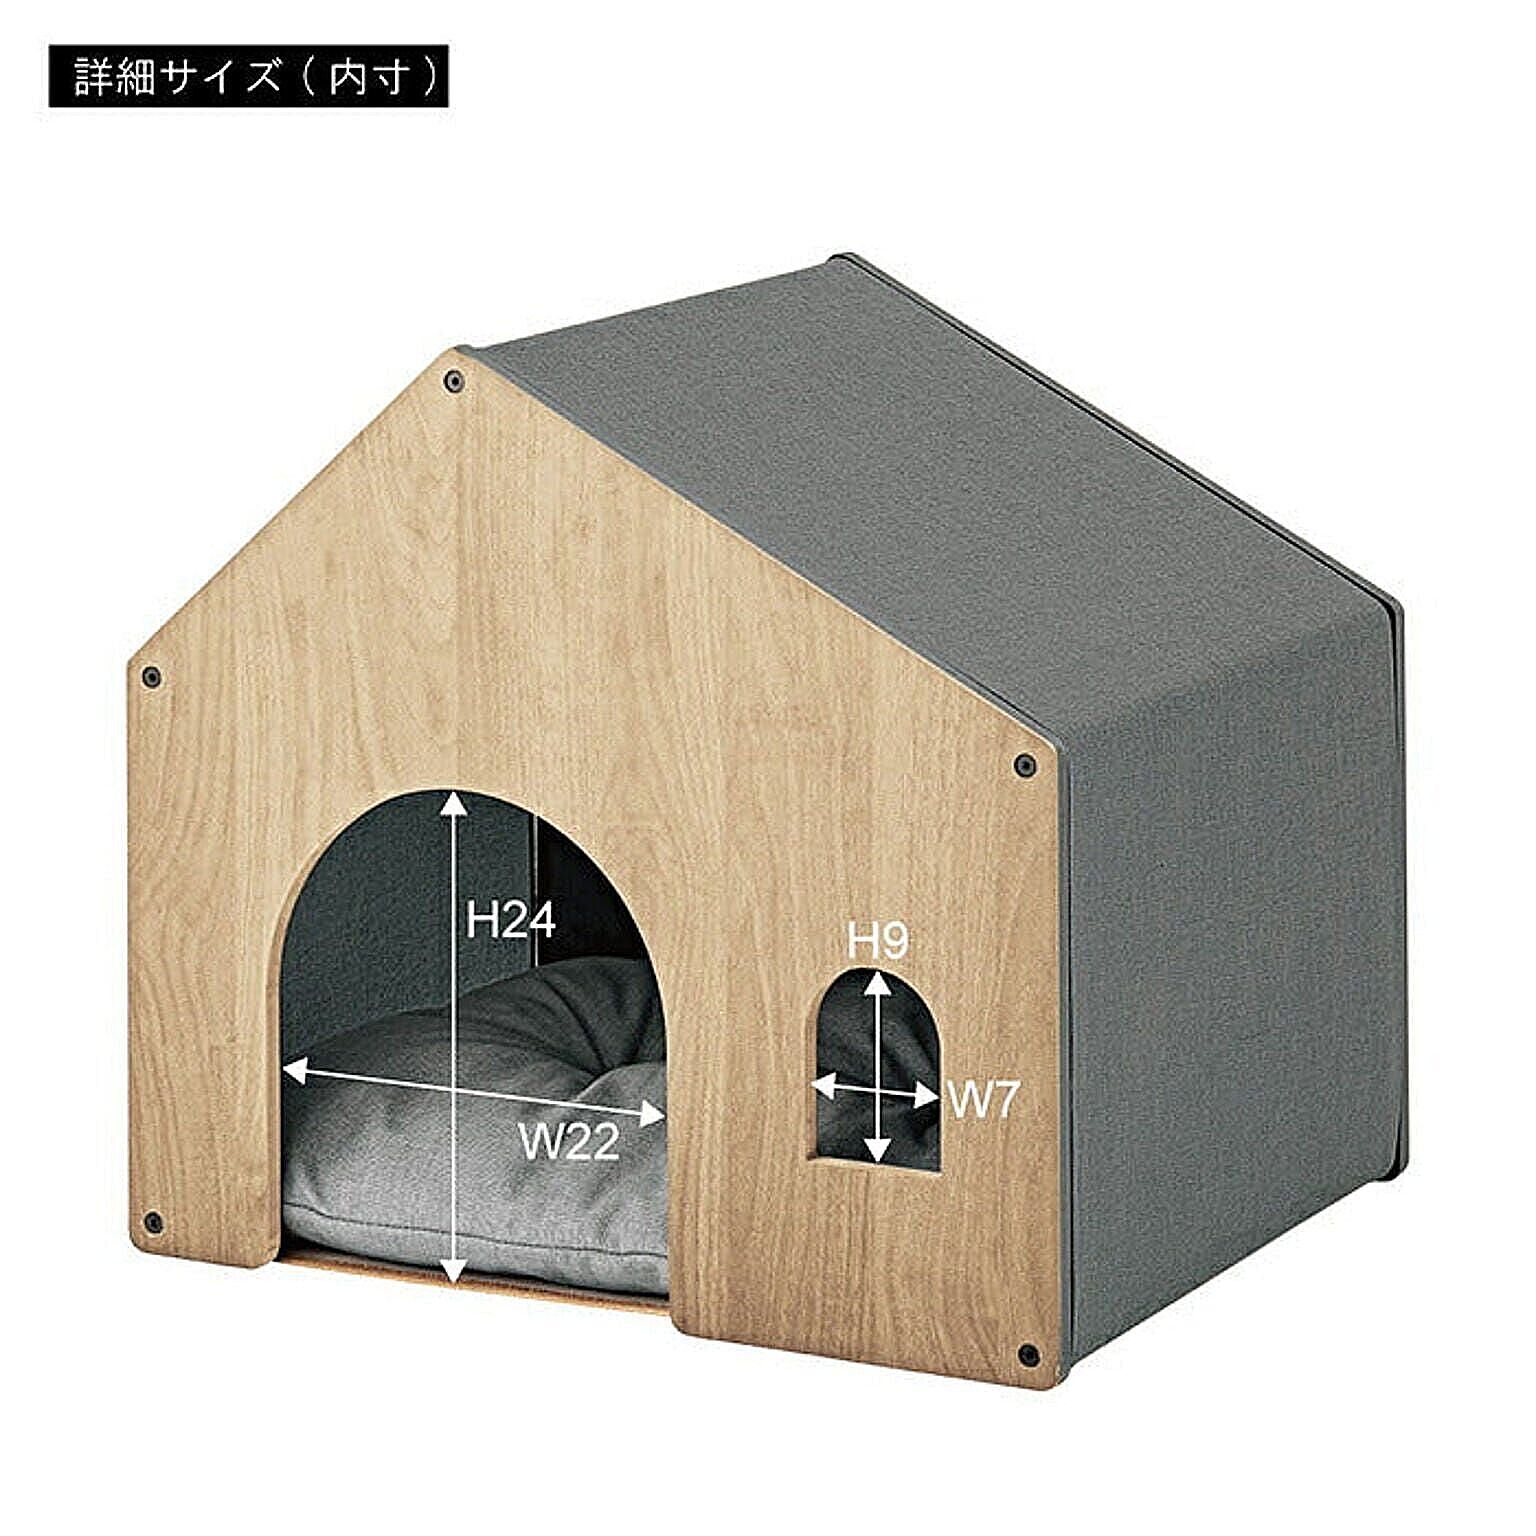 アイリスオーヤマ ウッディペットハウス WPH-460 アッシュブラウン メーカー直送 犬小屋、屋外サークル